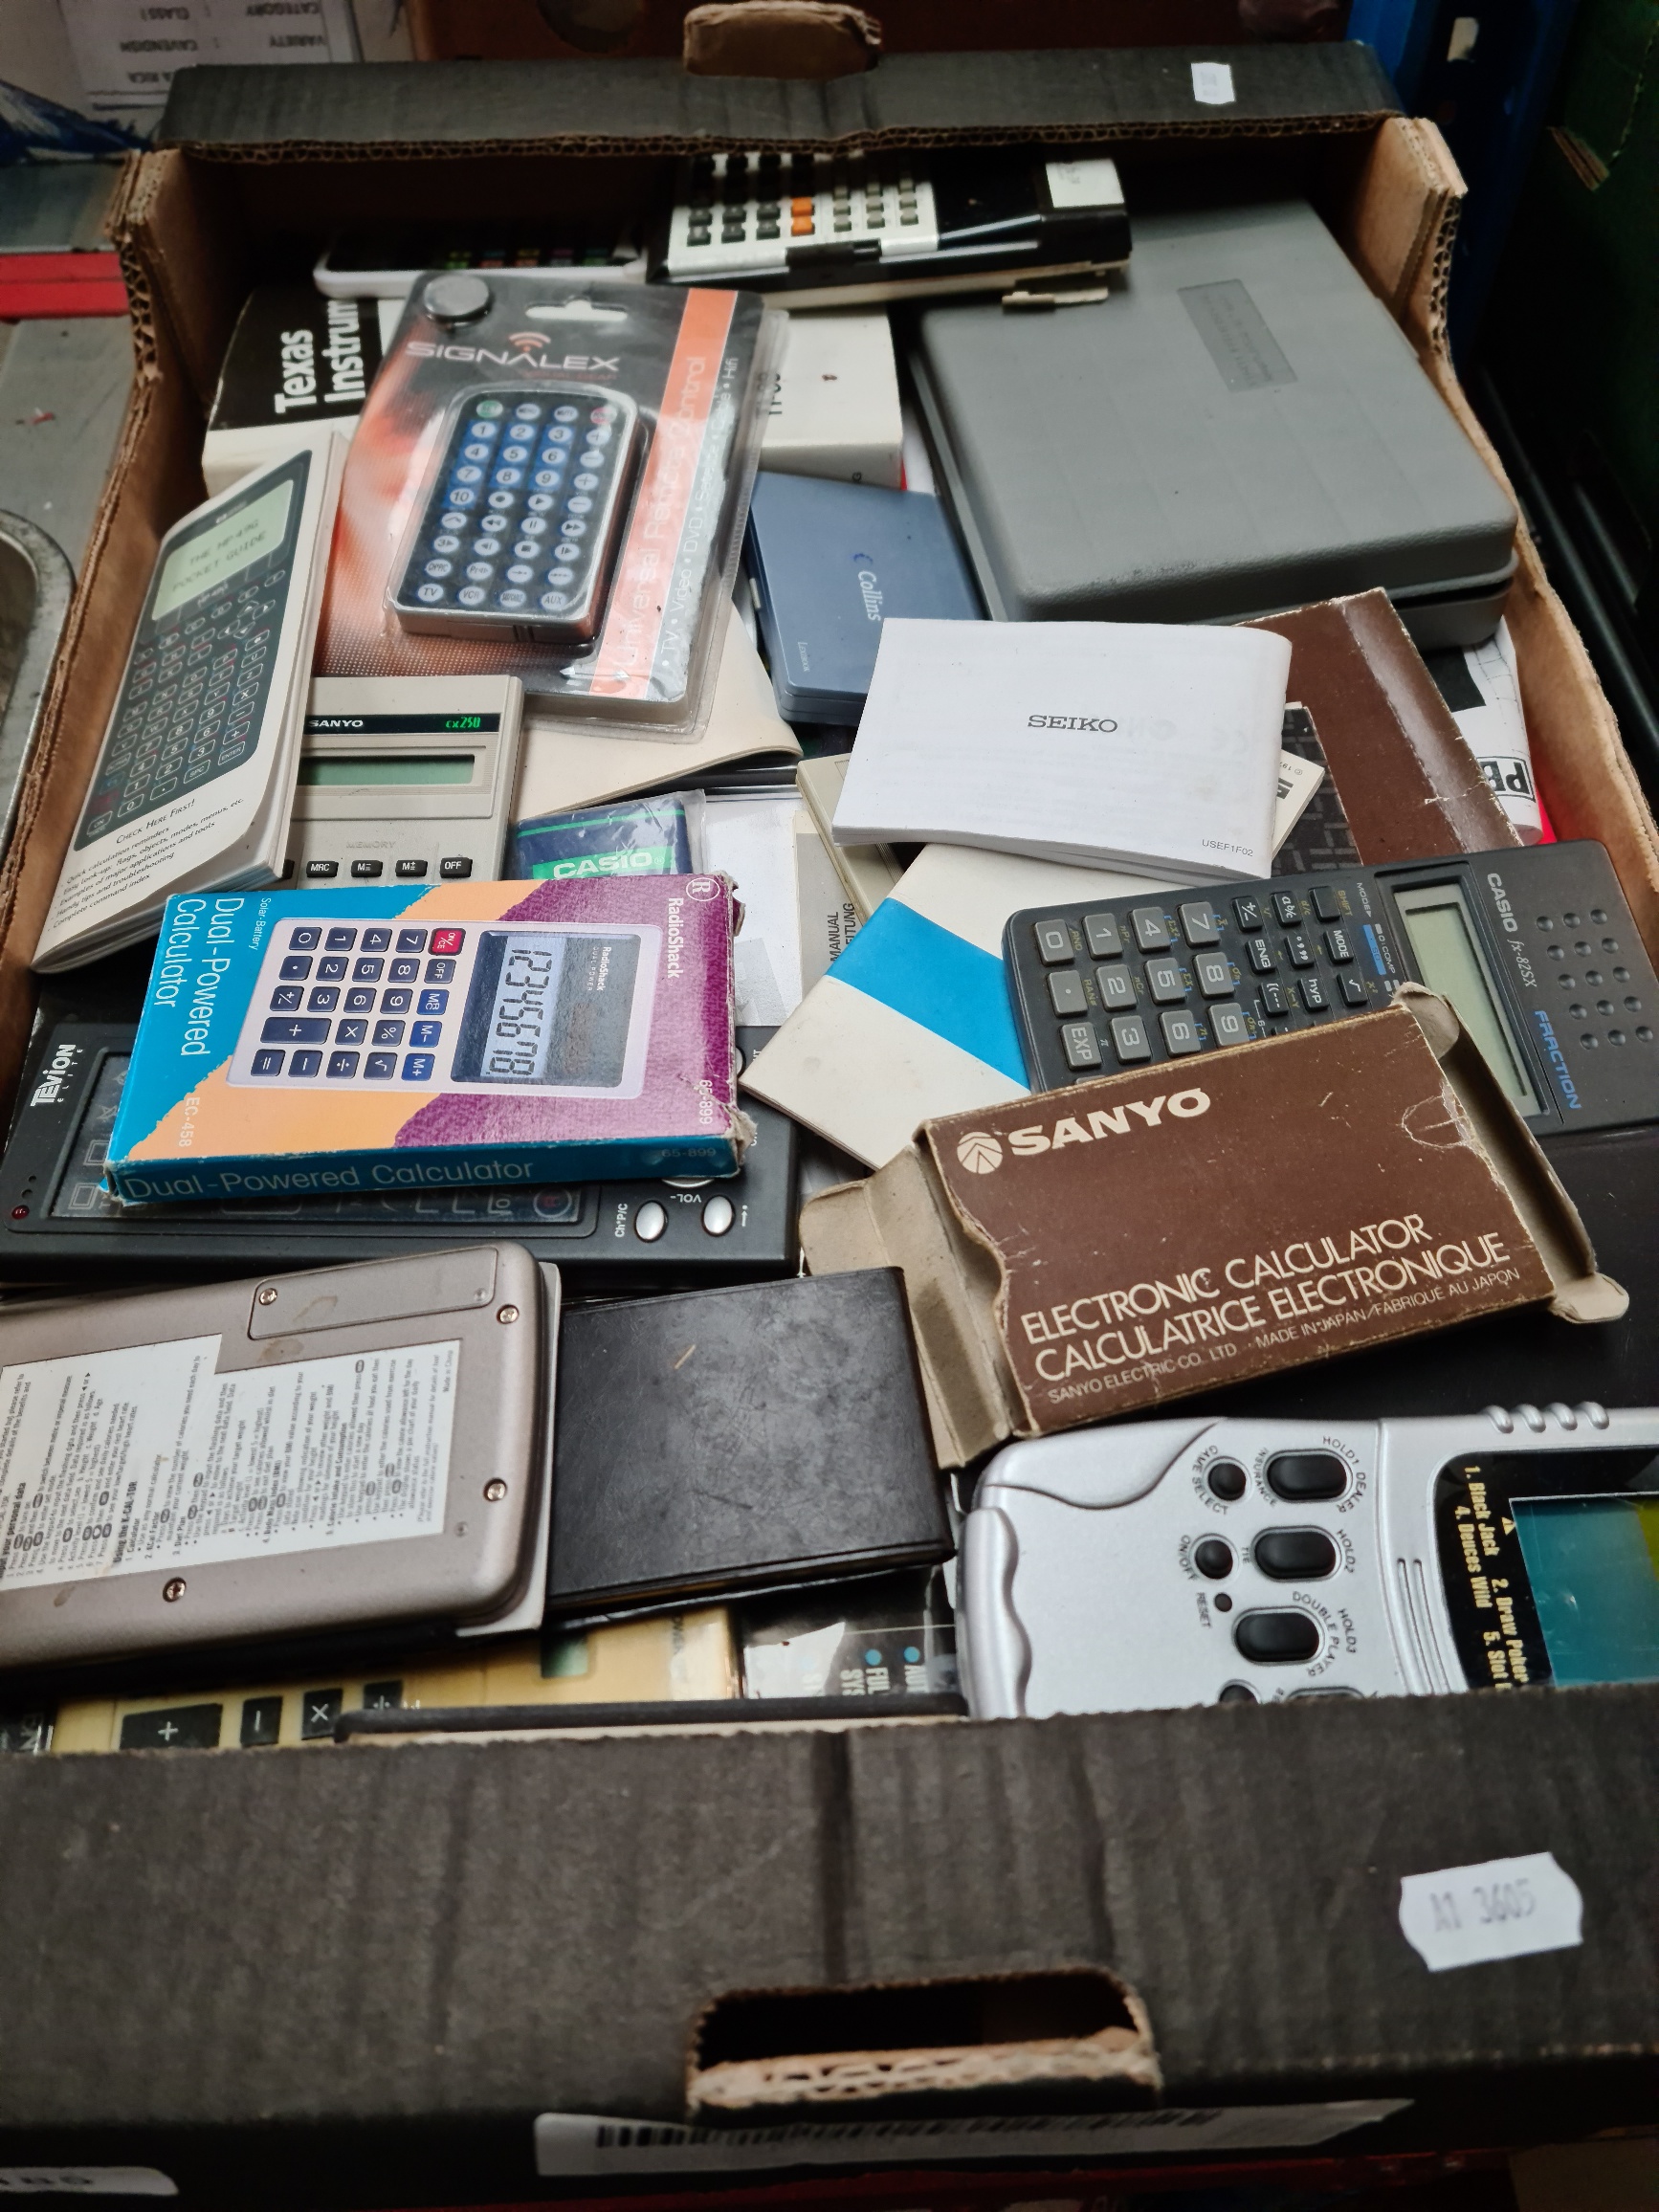 A box of vintage calculators